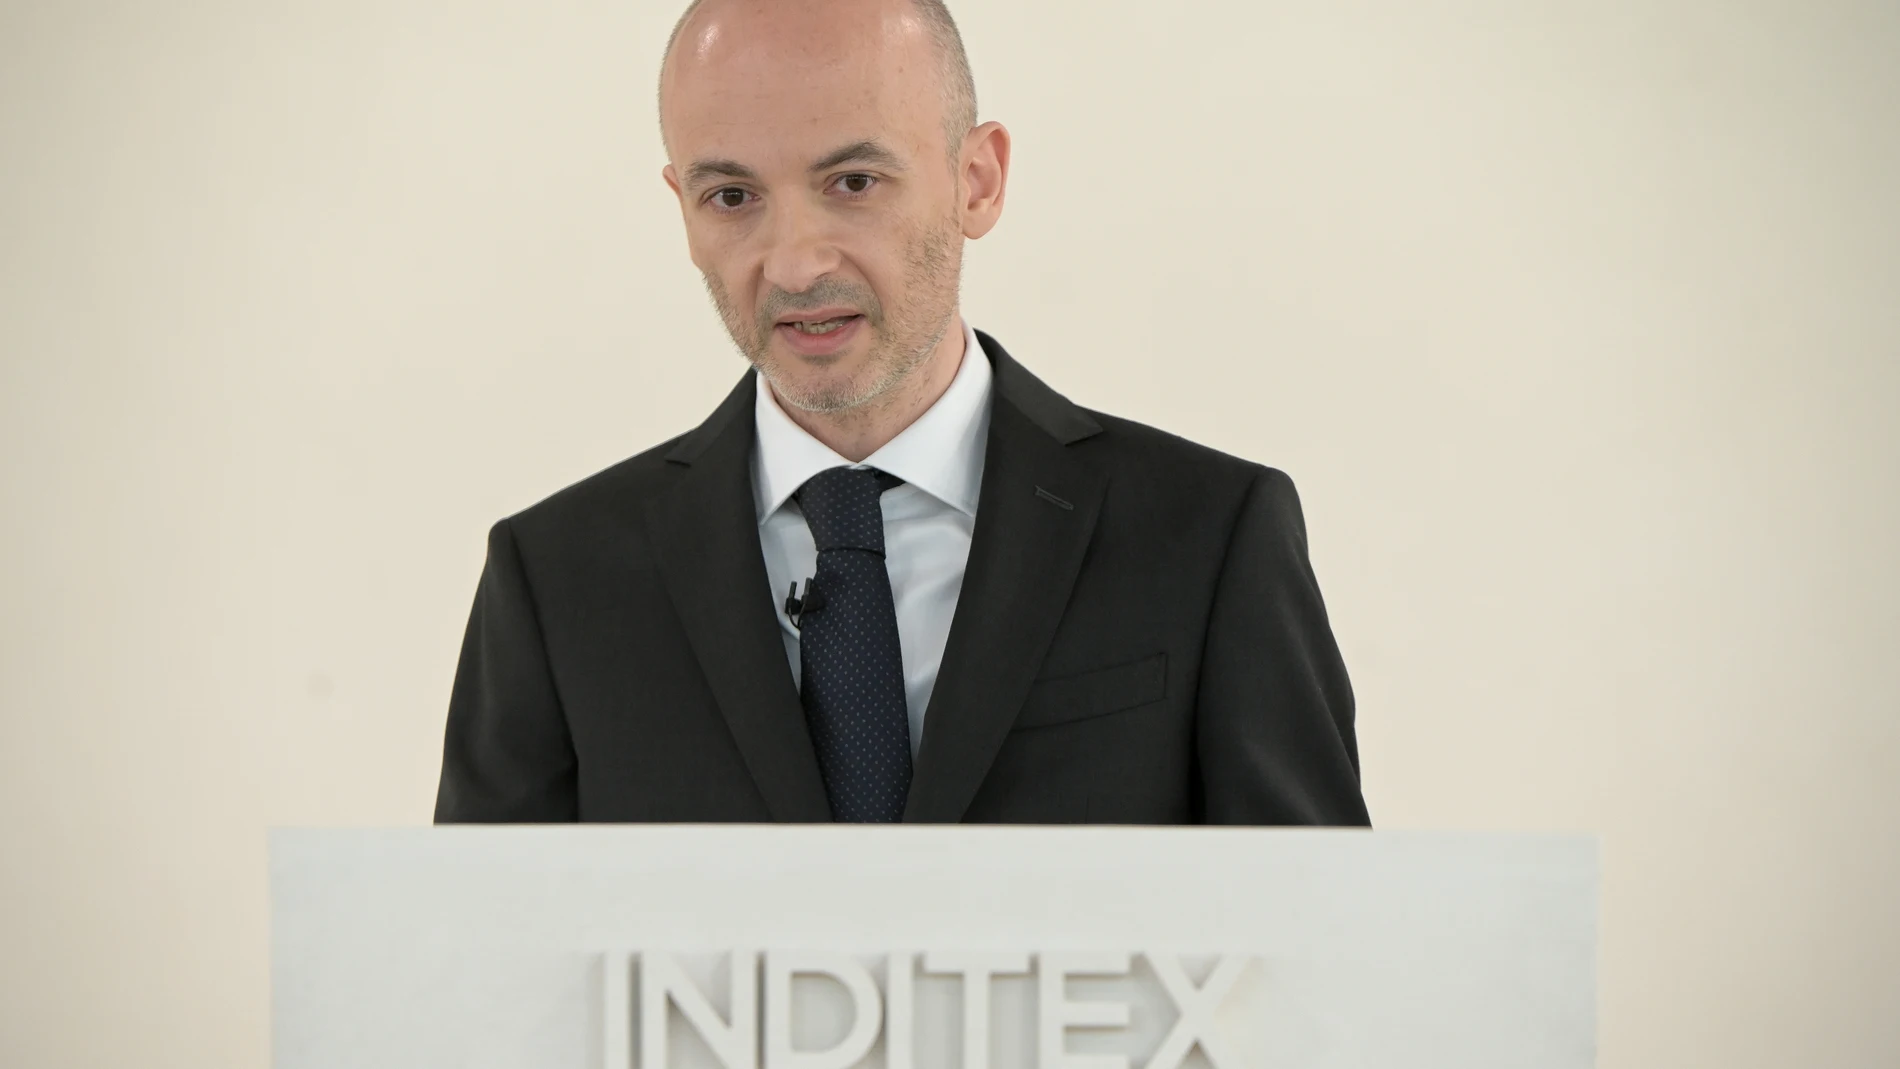 Economía.- García Maceiras: "Inditex tiene y va a seguir manteniendo su sede en España"